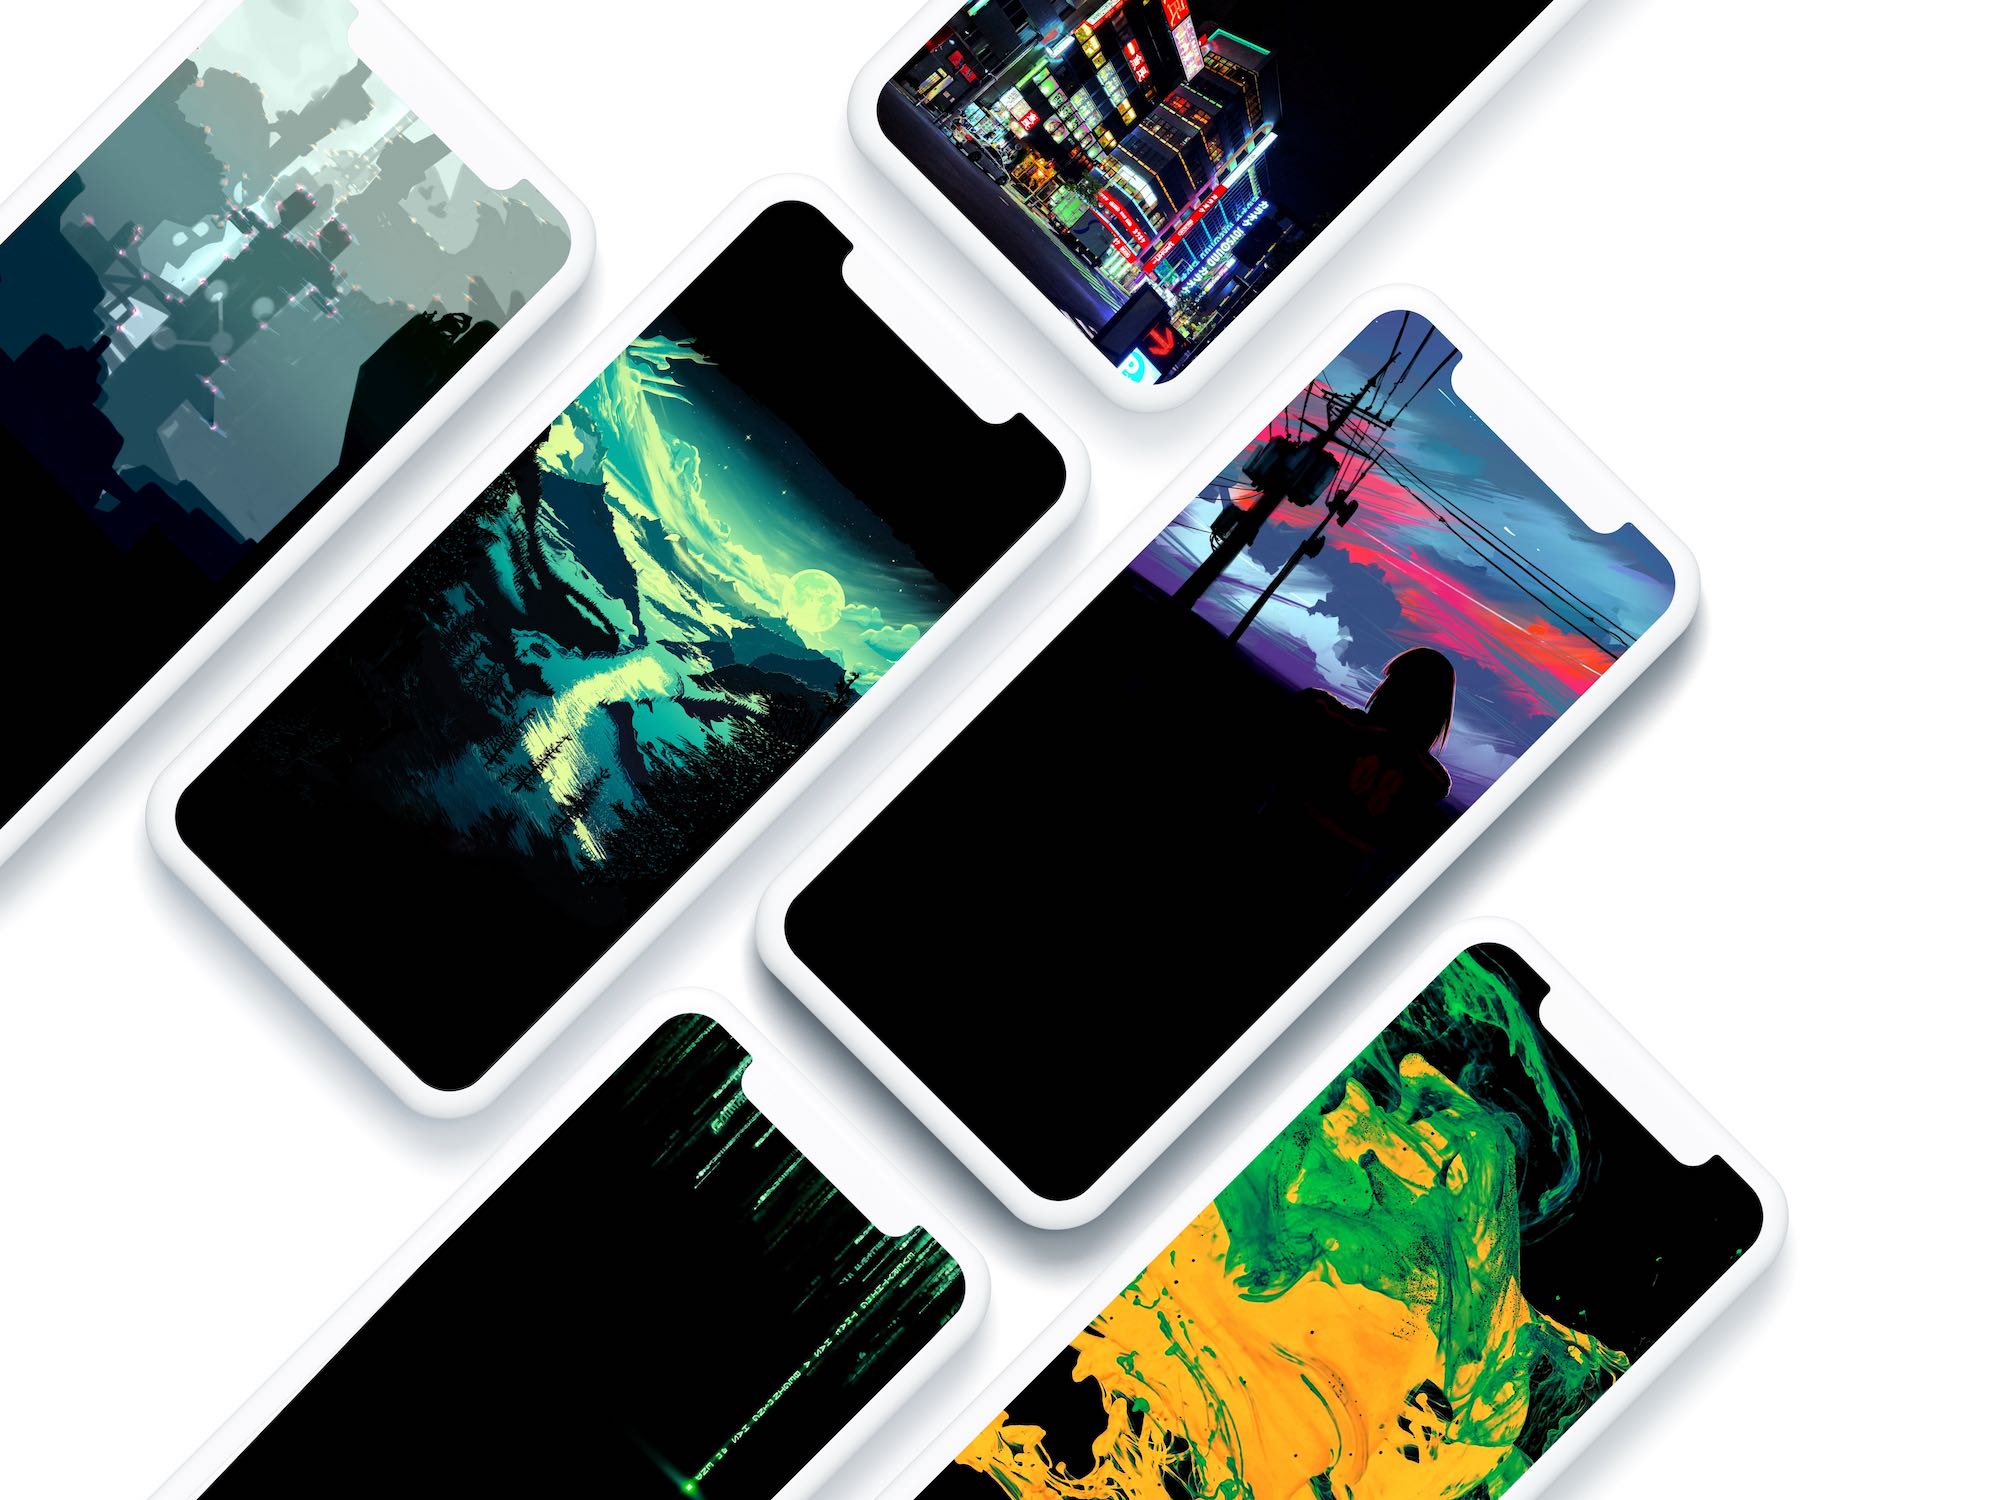 47+] iPhone 11 Pro 4k 2020 Wallpapers - WallpaperSafari